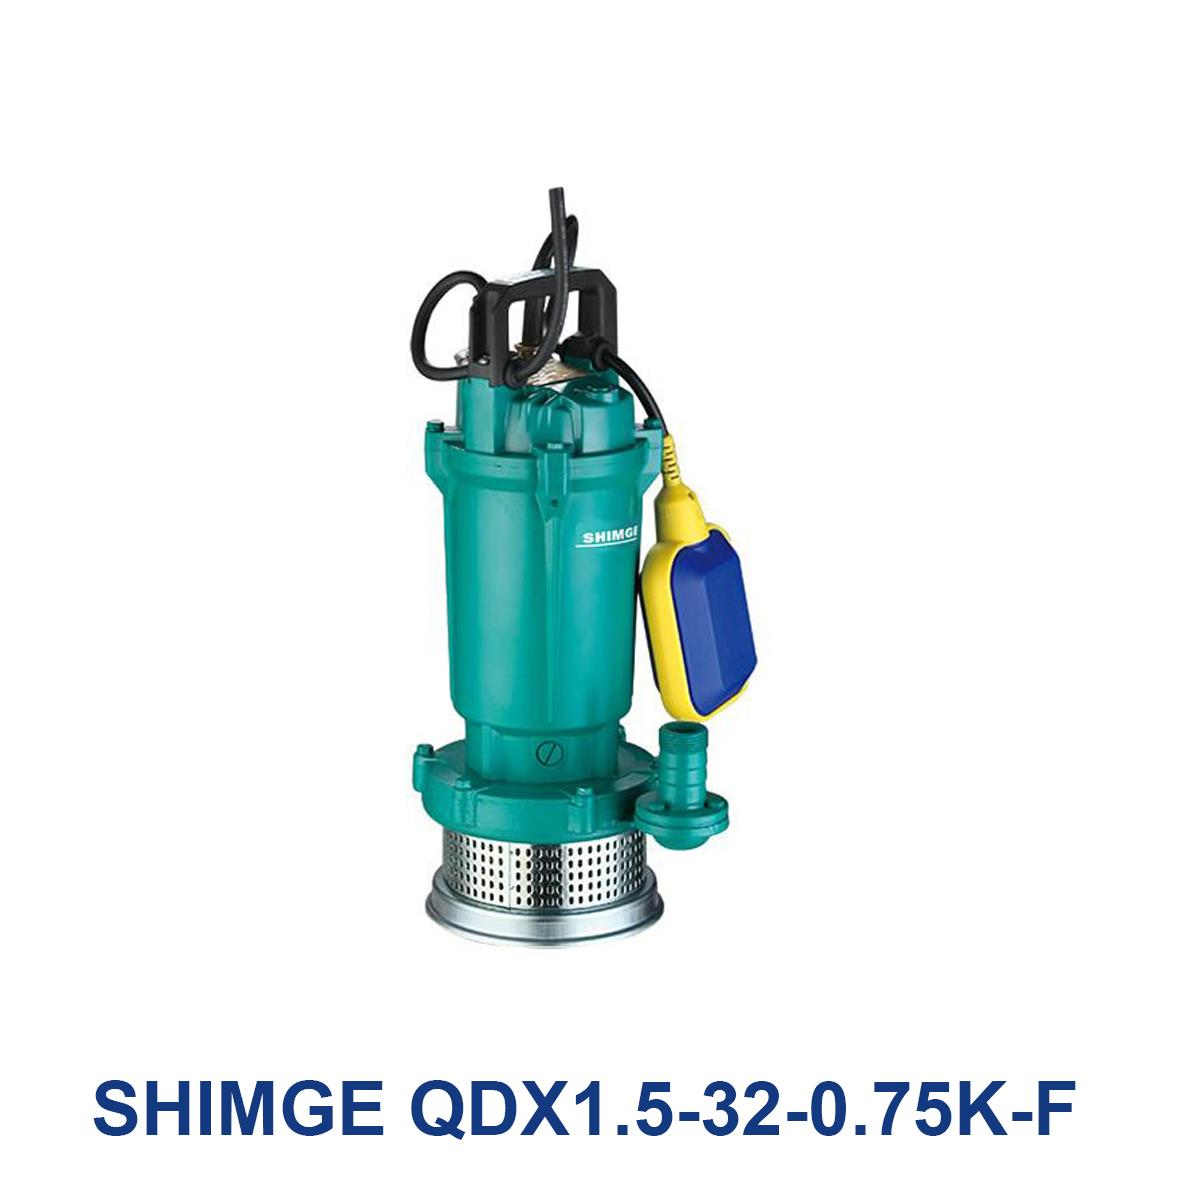 SHIMGE-QDX1.5-32-0.75K-F